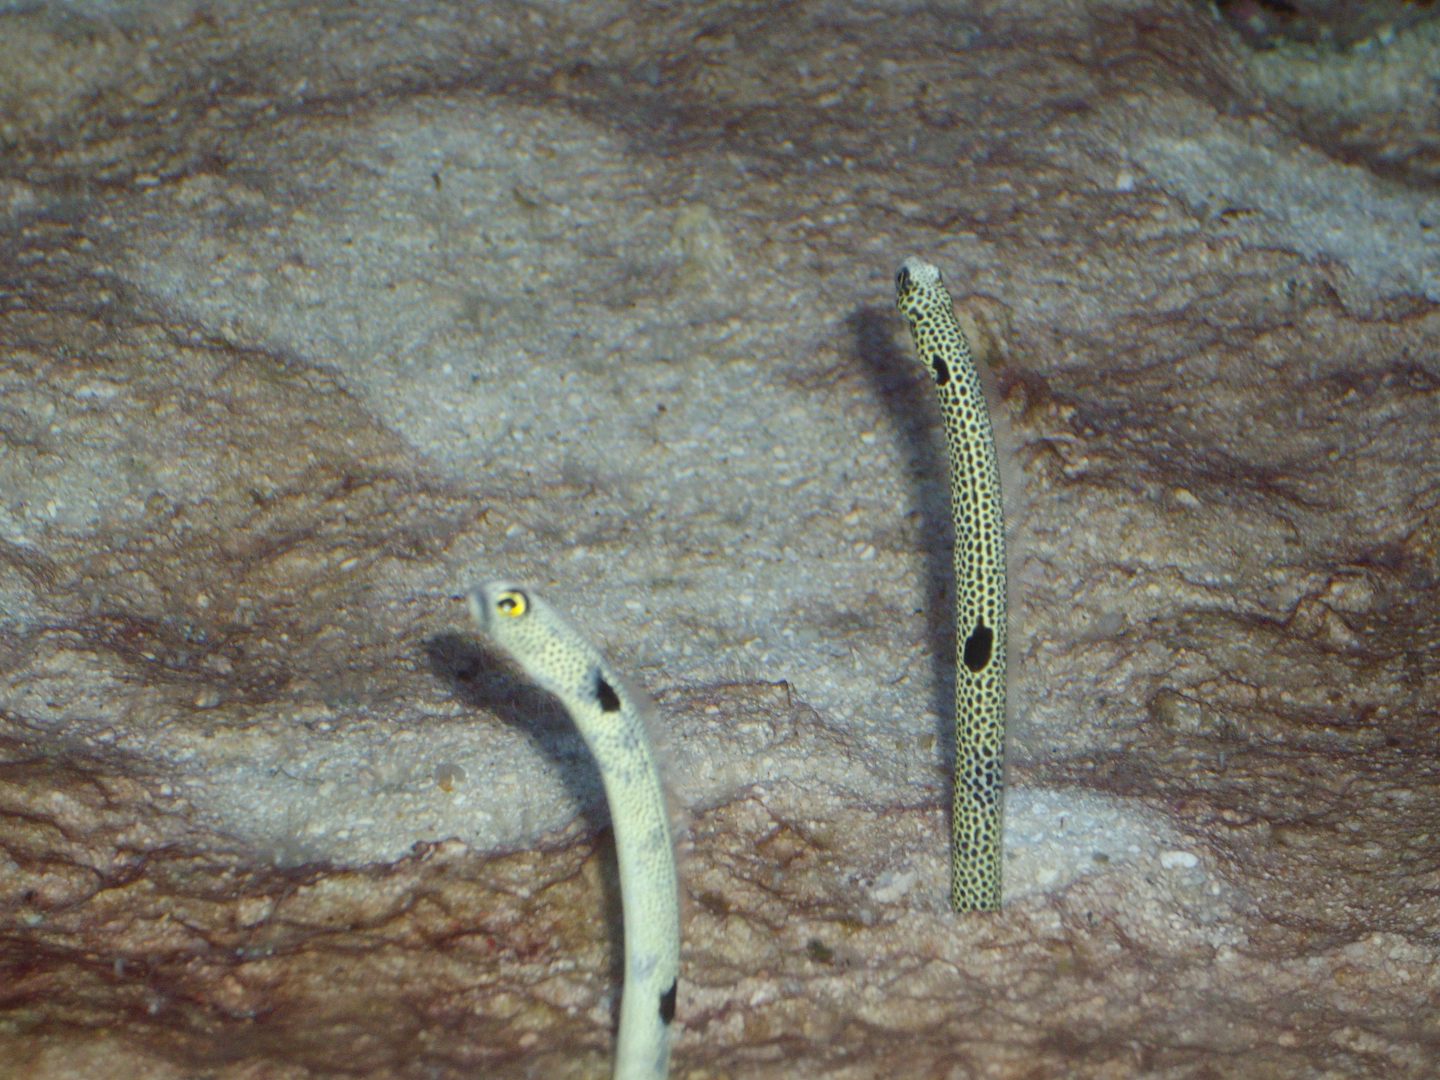 Sand eels at the Noumea Aquarium...small but brilliant place